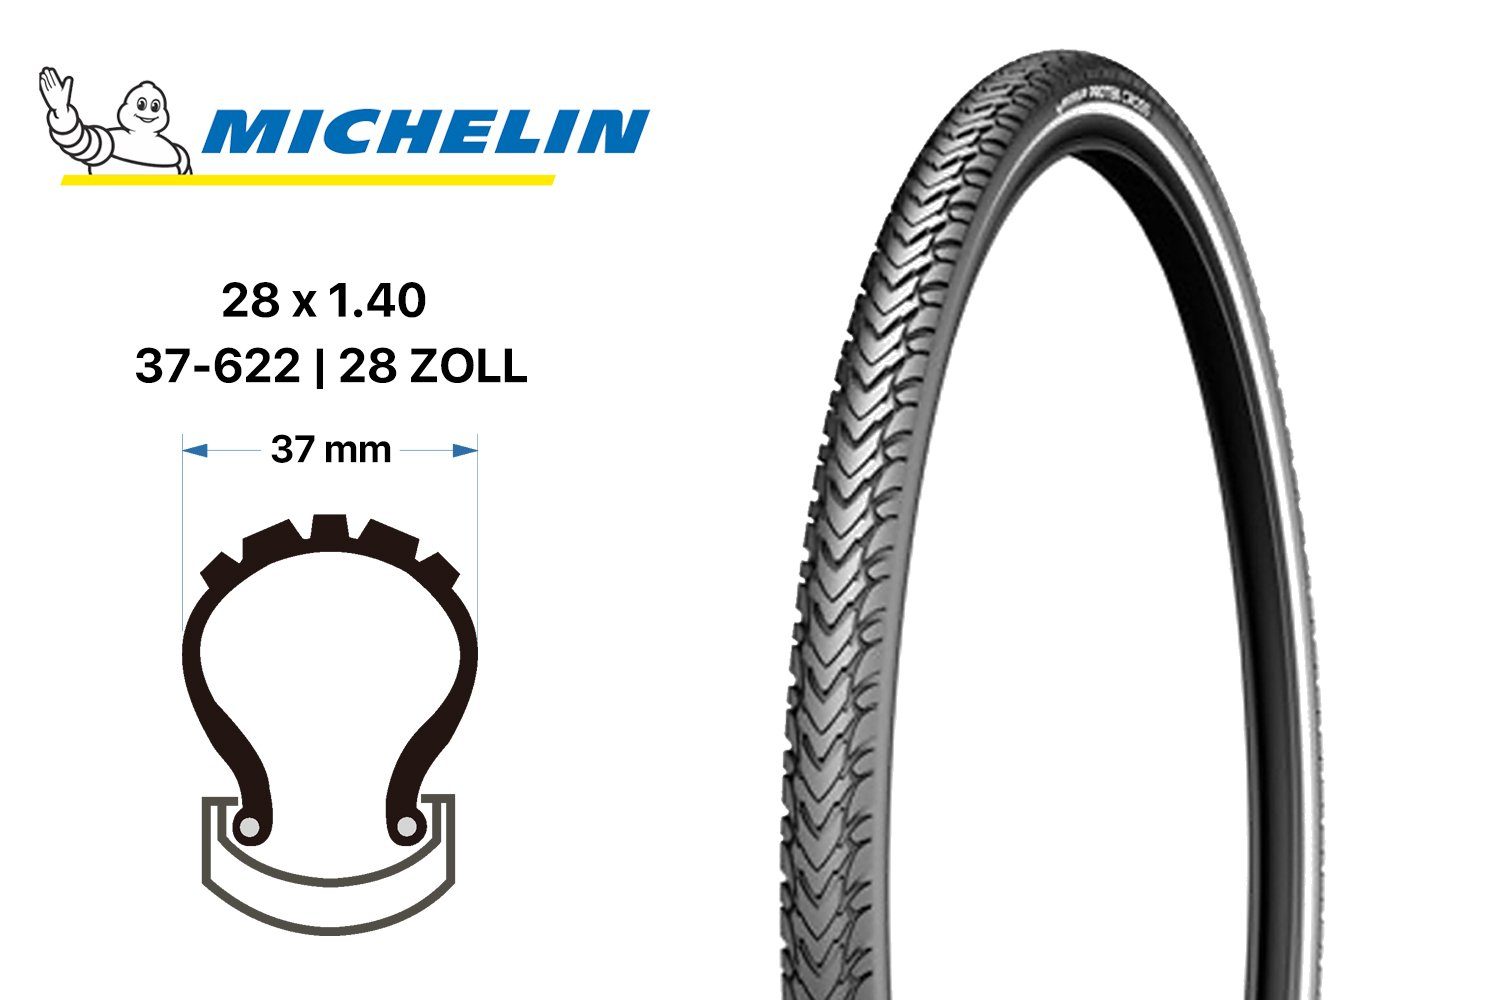 Michelin Fahrradreifen 28 Reifen MICHELIN Protek Cross Zoll Fahrrad 37-622 Pannenschutz Mante